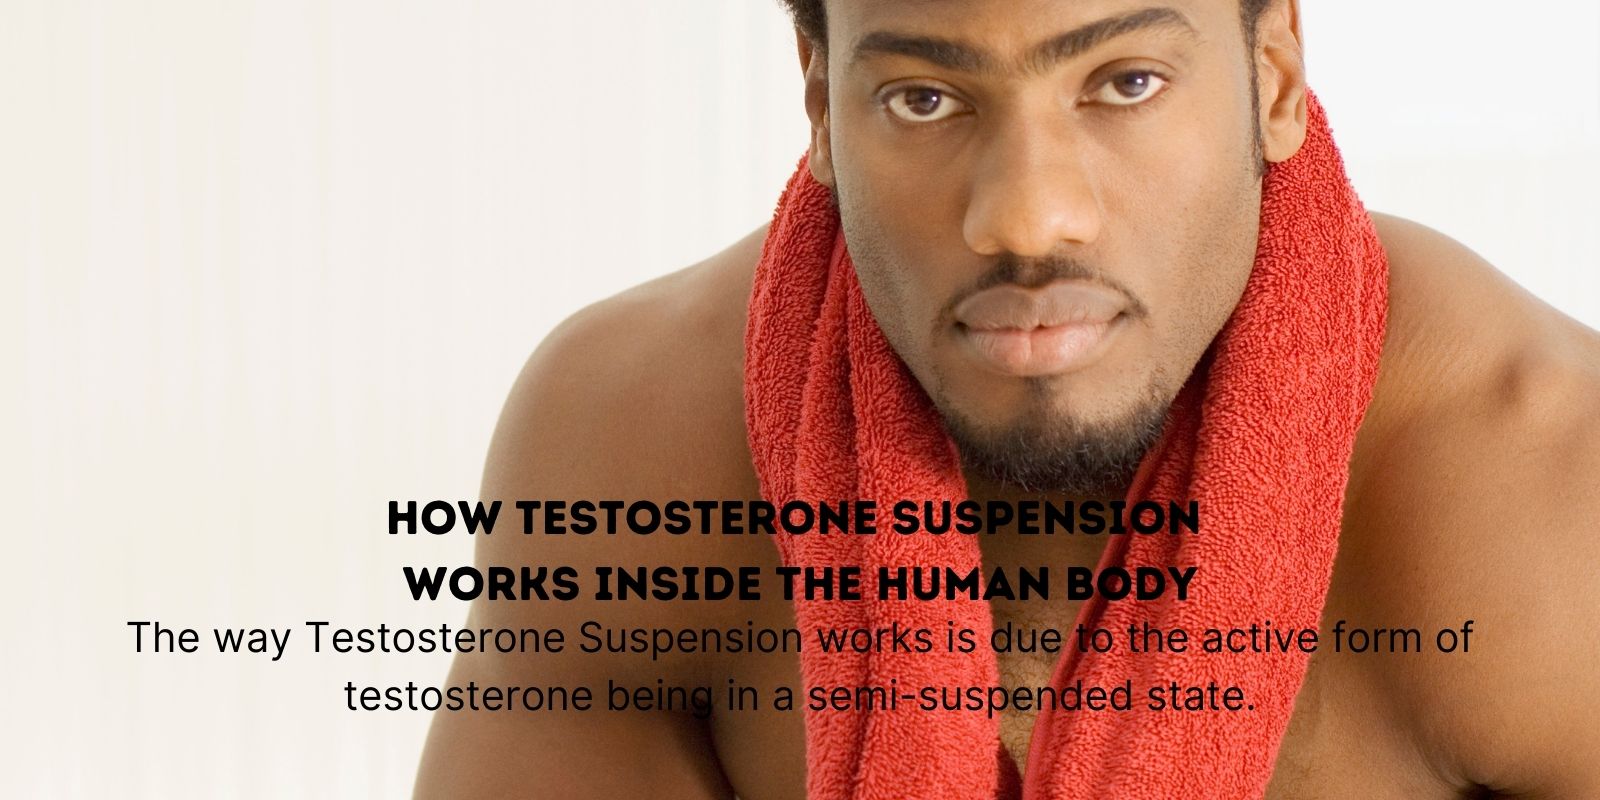 Kuinka Testosteronisuspensio toimii ihmiskehossa